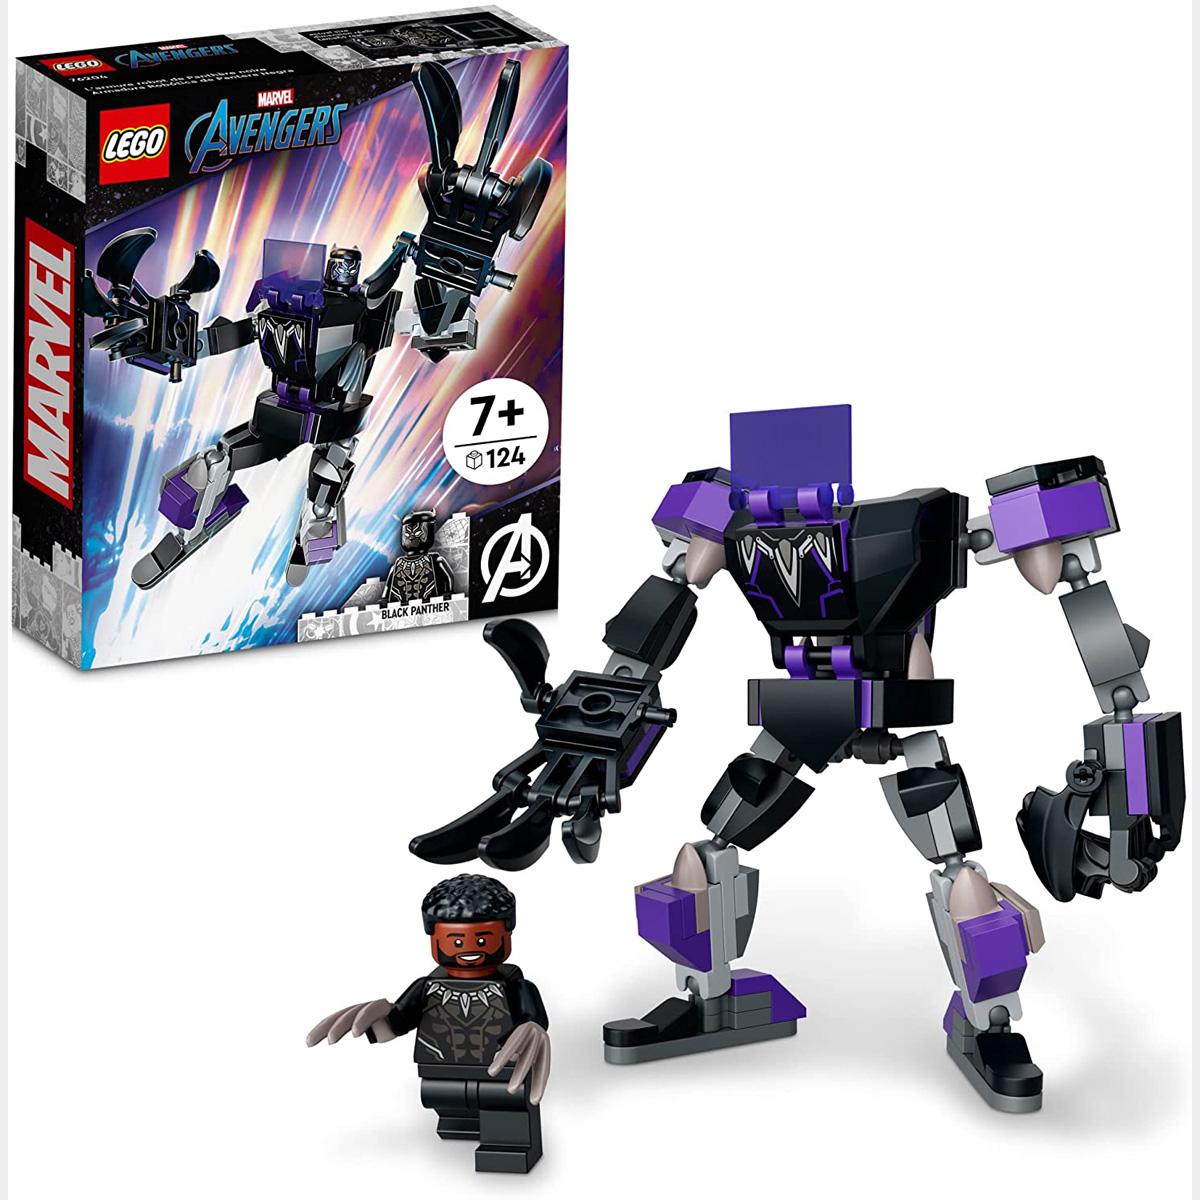 LEGO Marvel Black Panther Mech Armor 76204 Building Kit for $7.99